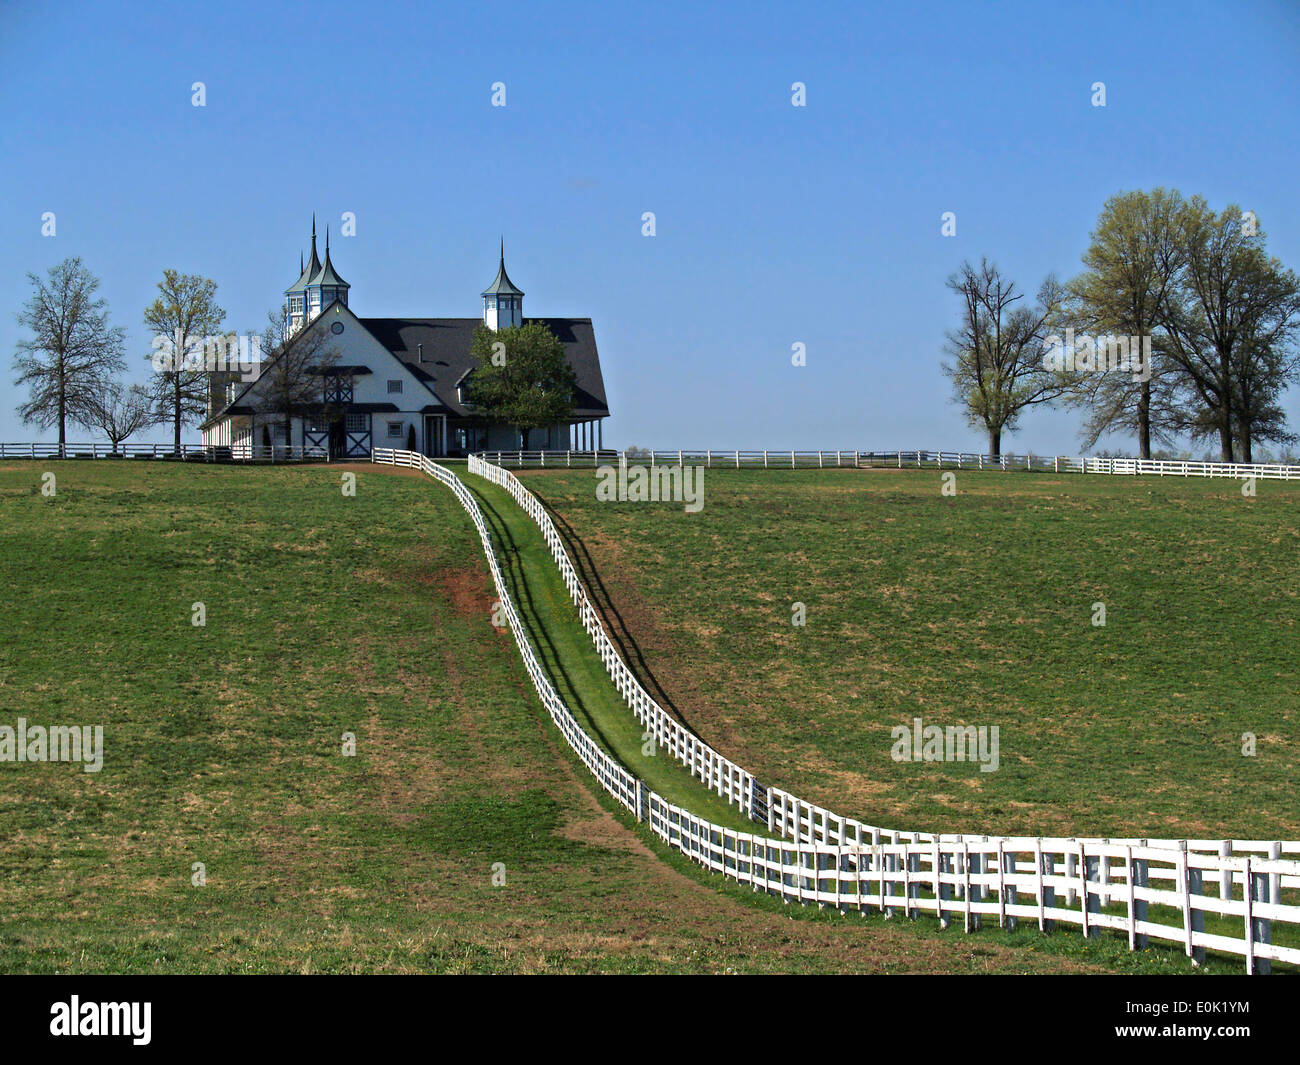 Plank blanc clôtures conduirait dans un cupolaed,stable,cheval Lexington Kentucky Banque D'Images